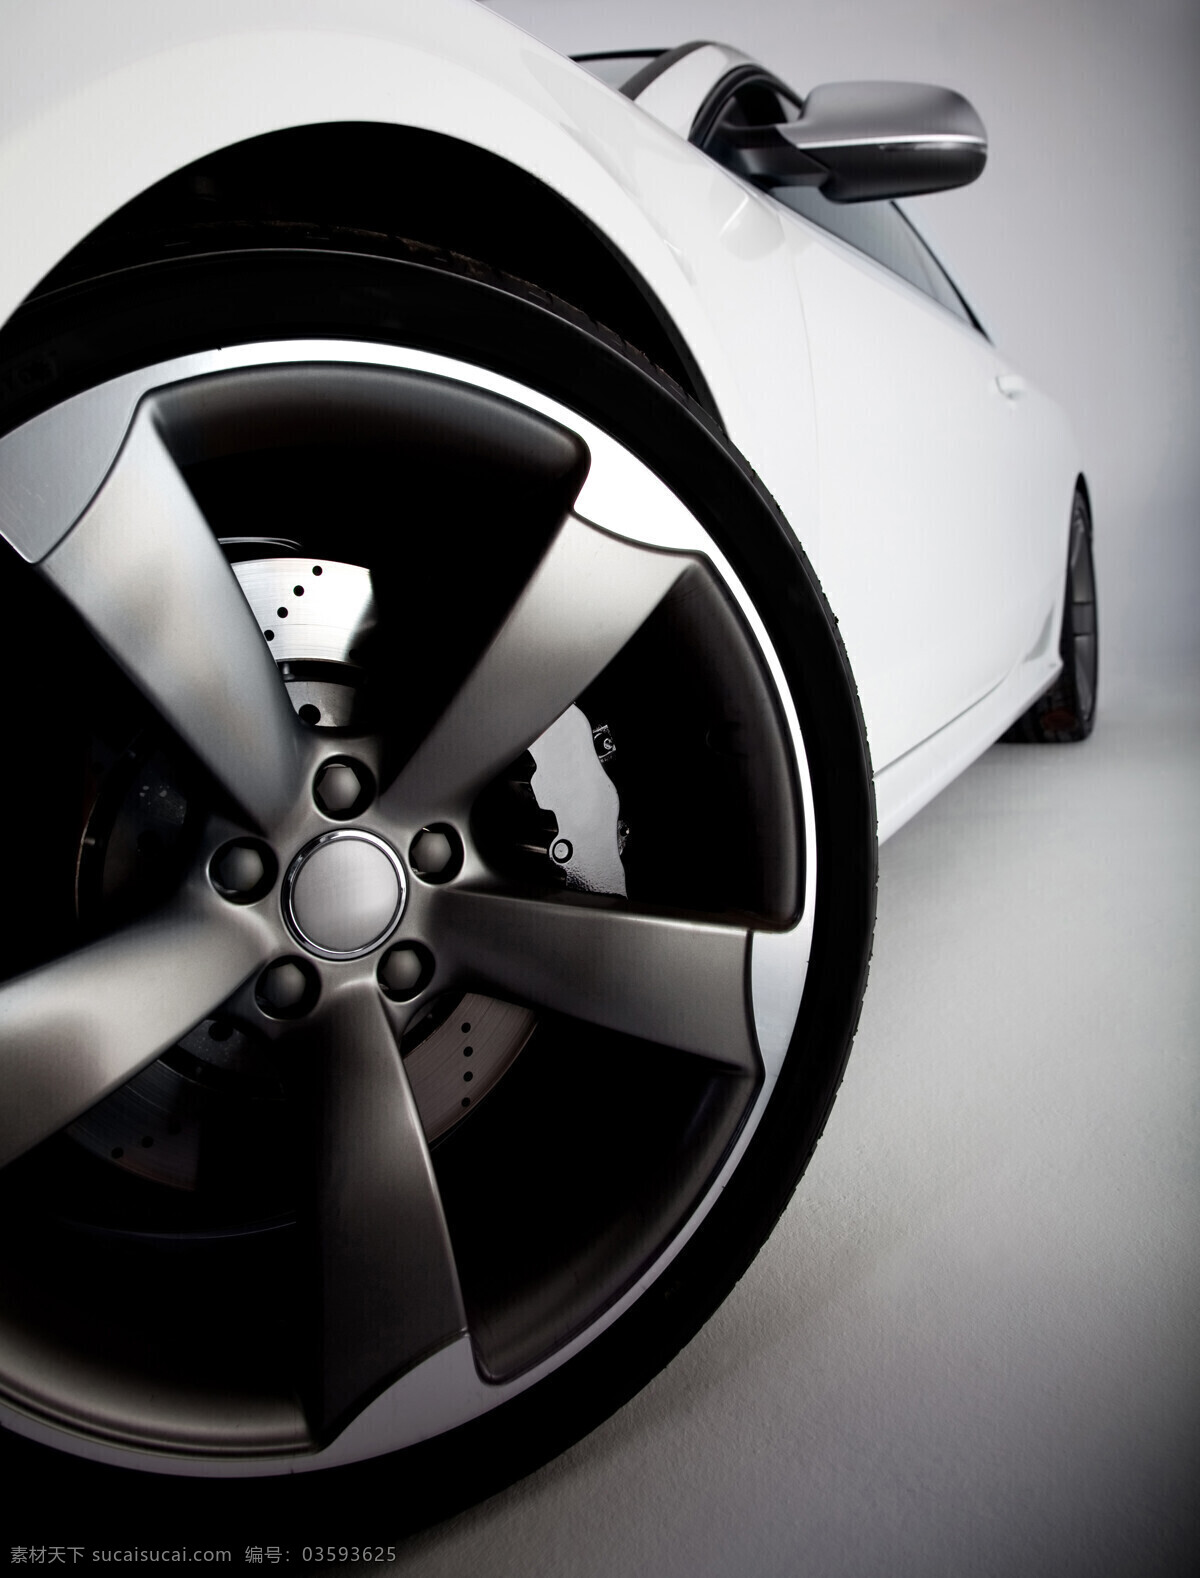 轮胎 轮毂 轿车轮胎 车胎 汽配 汽车轮胎 汽车图片 现代科技